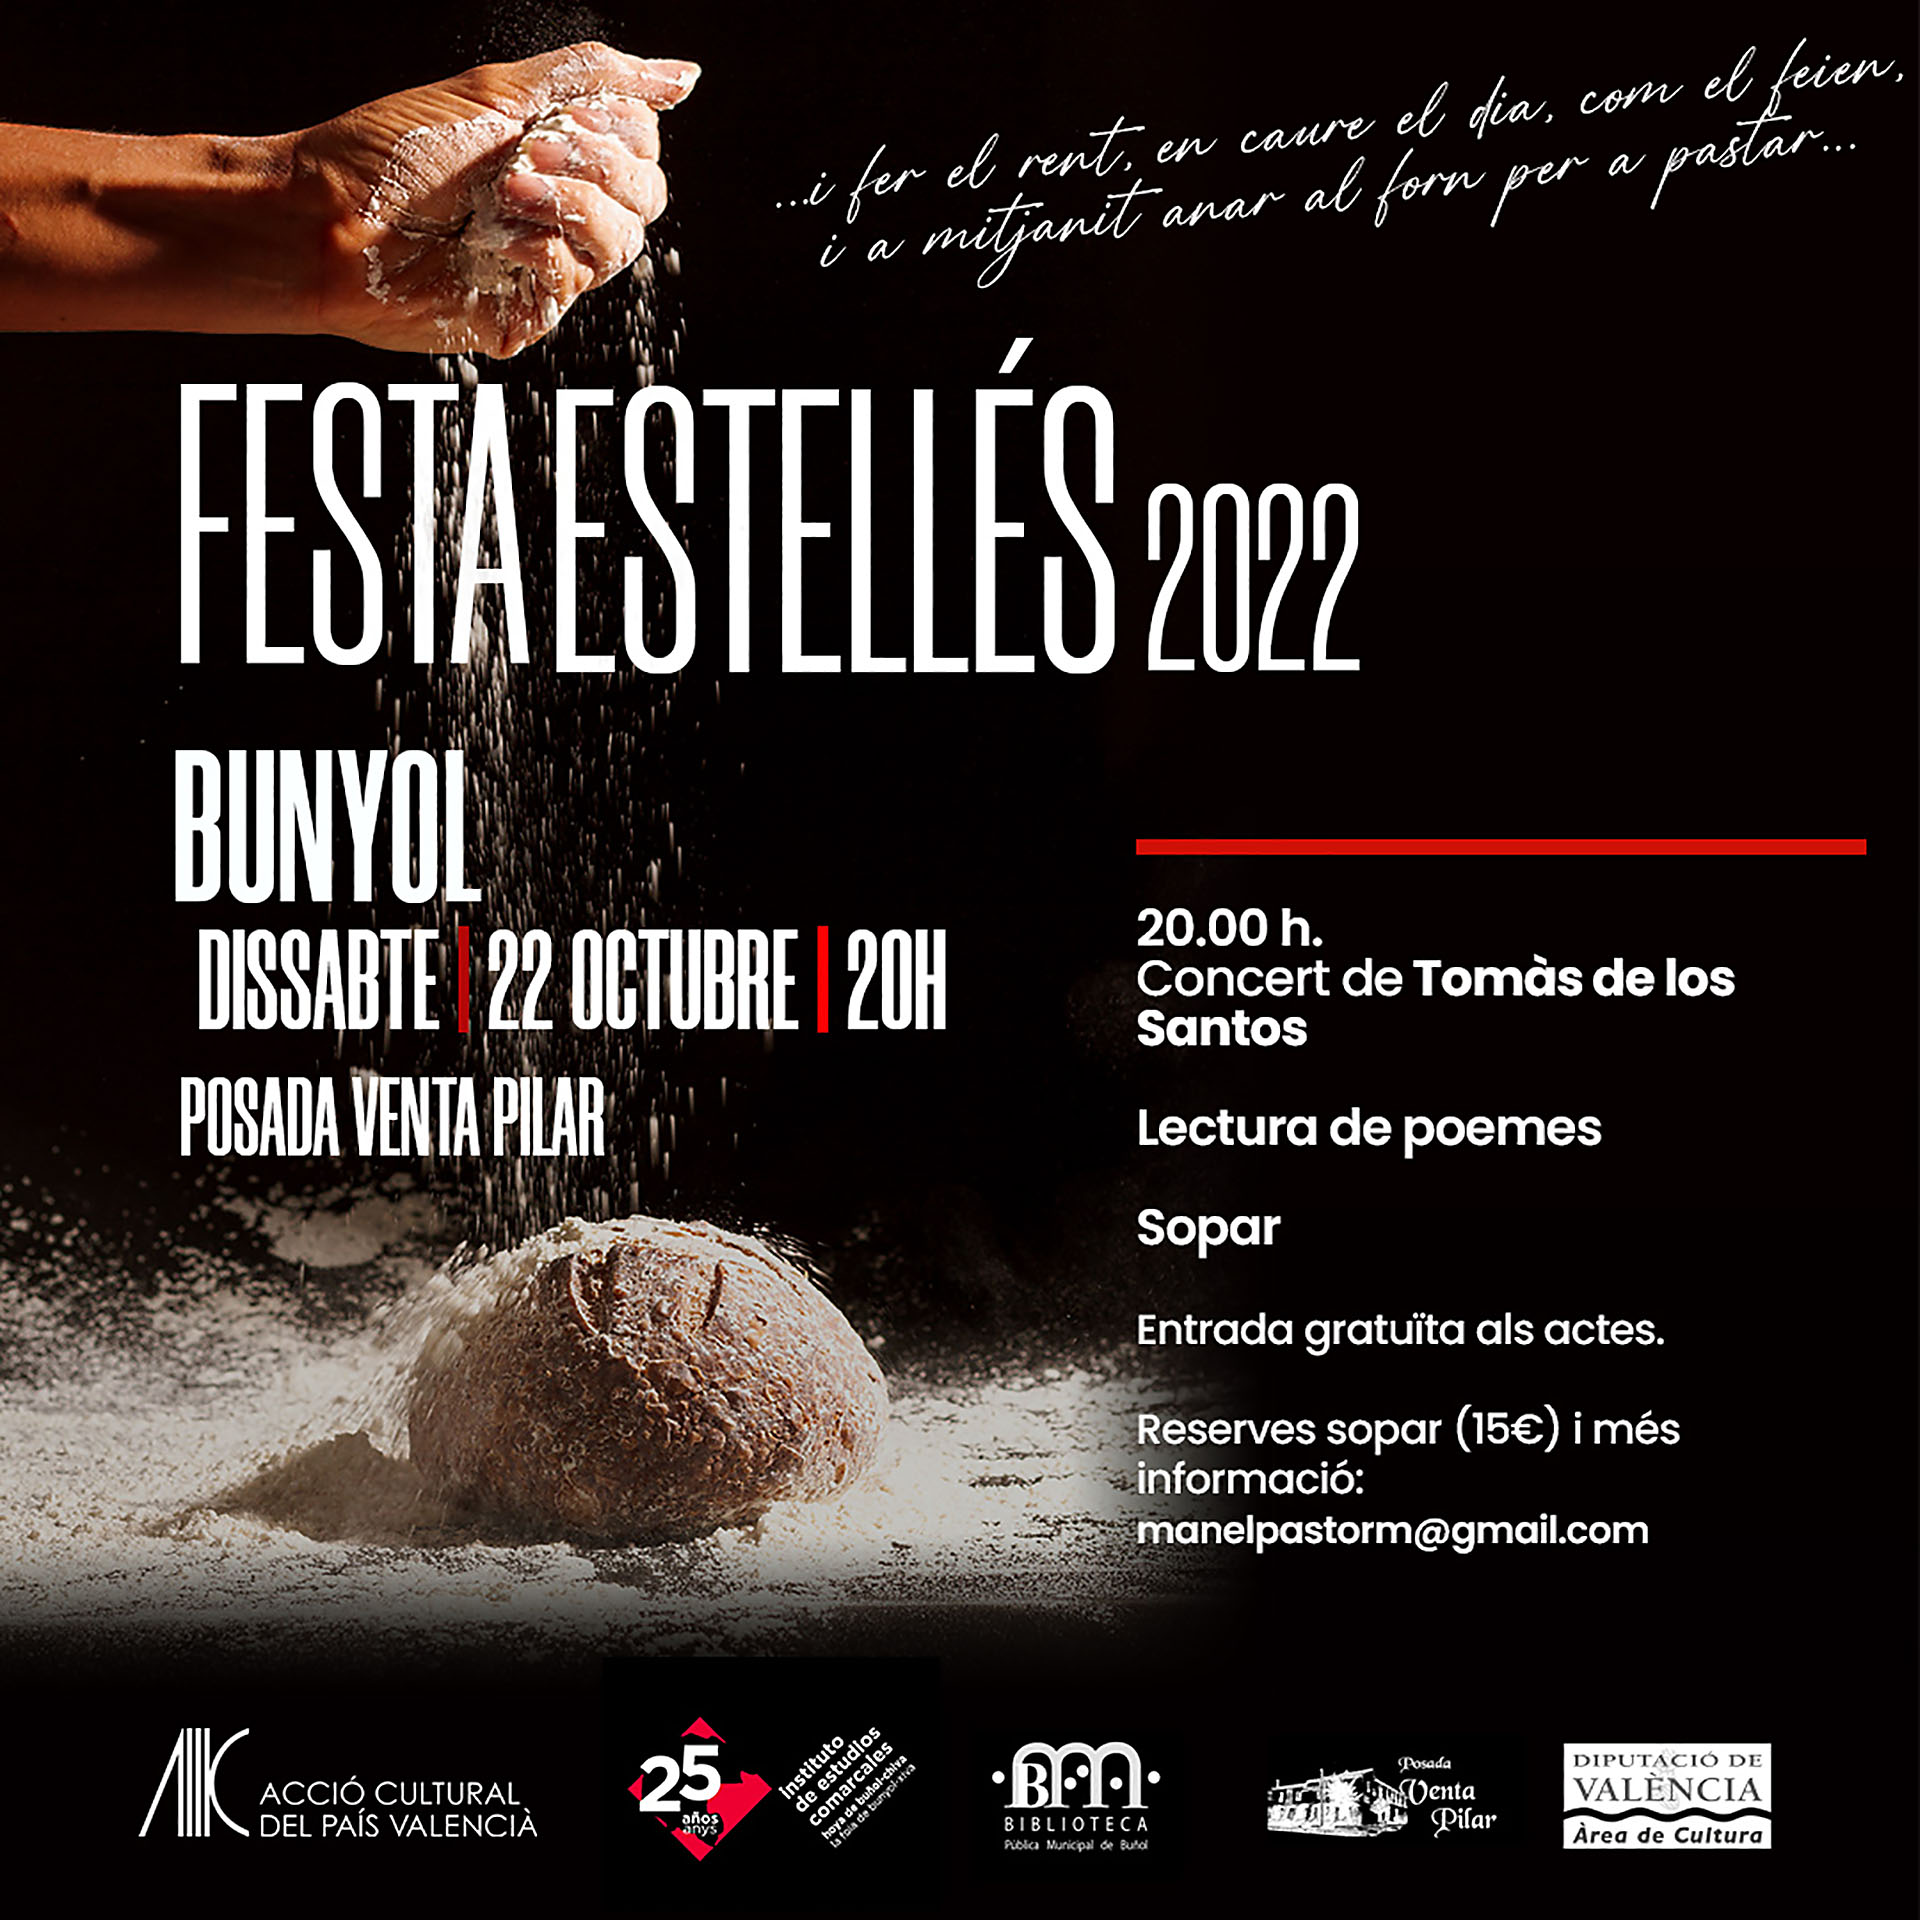 Festa Estellés 2022